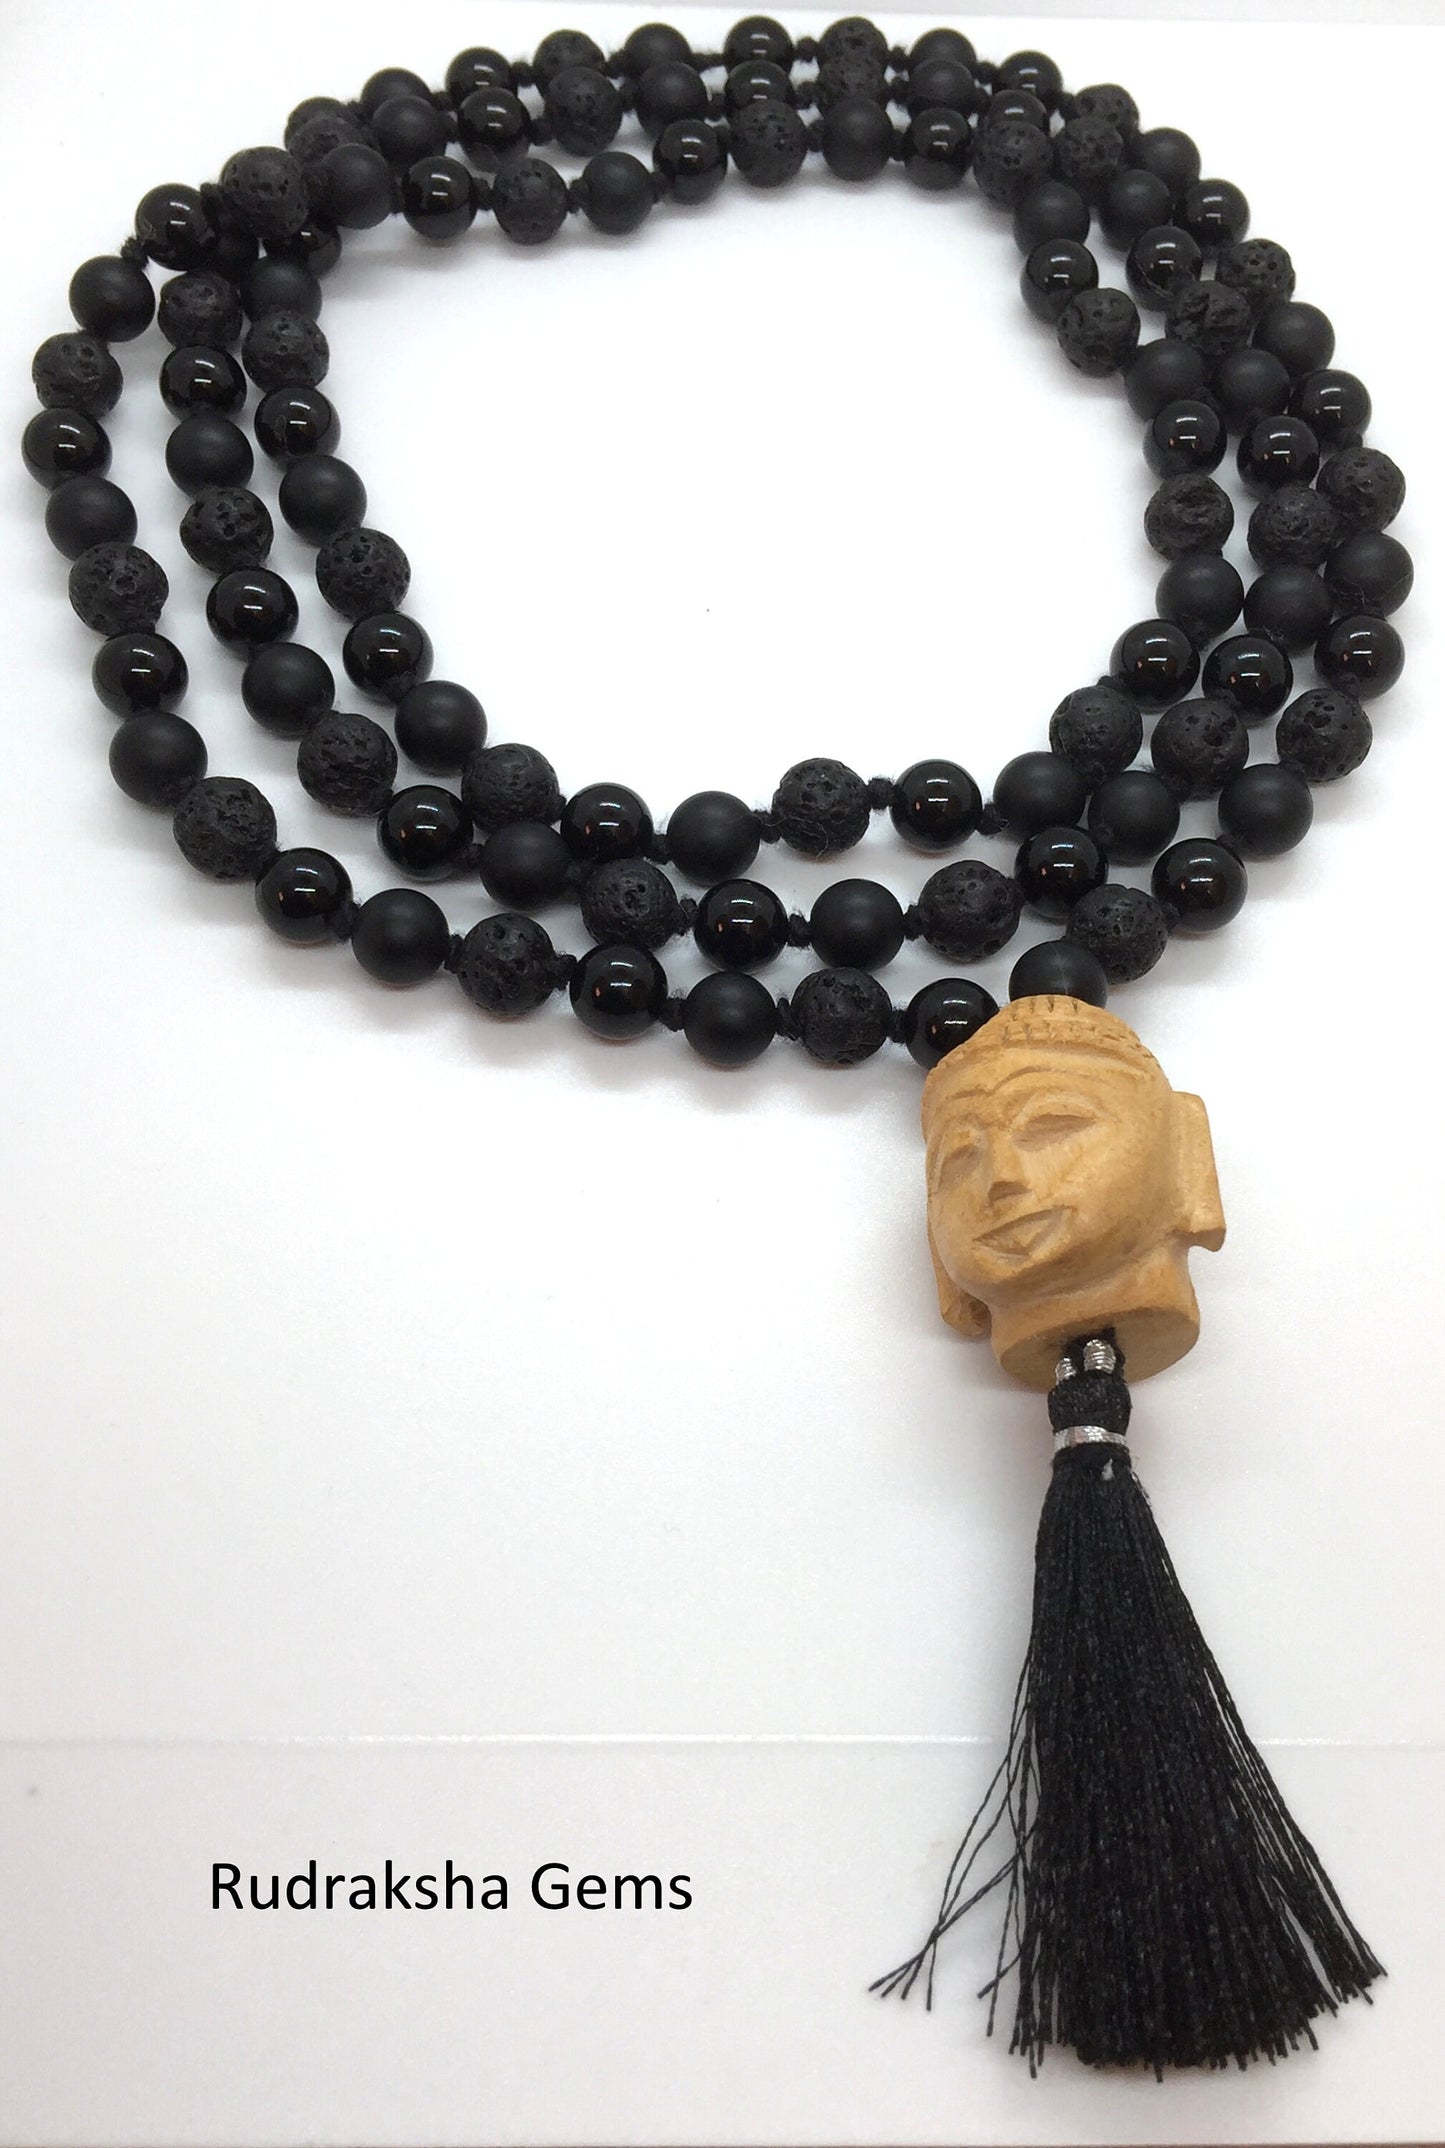 POWER Mala Bead Necklace, Mala Beads, 108 Mala, Lava Rock Mala, Black Onyx Mala, Buddha Mala, Yoga Jewelry, Prayer Beads, Meditation Beads